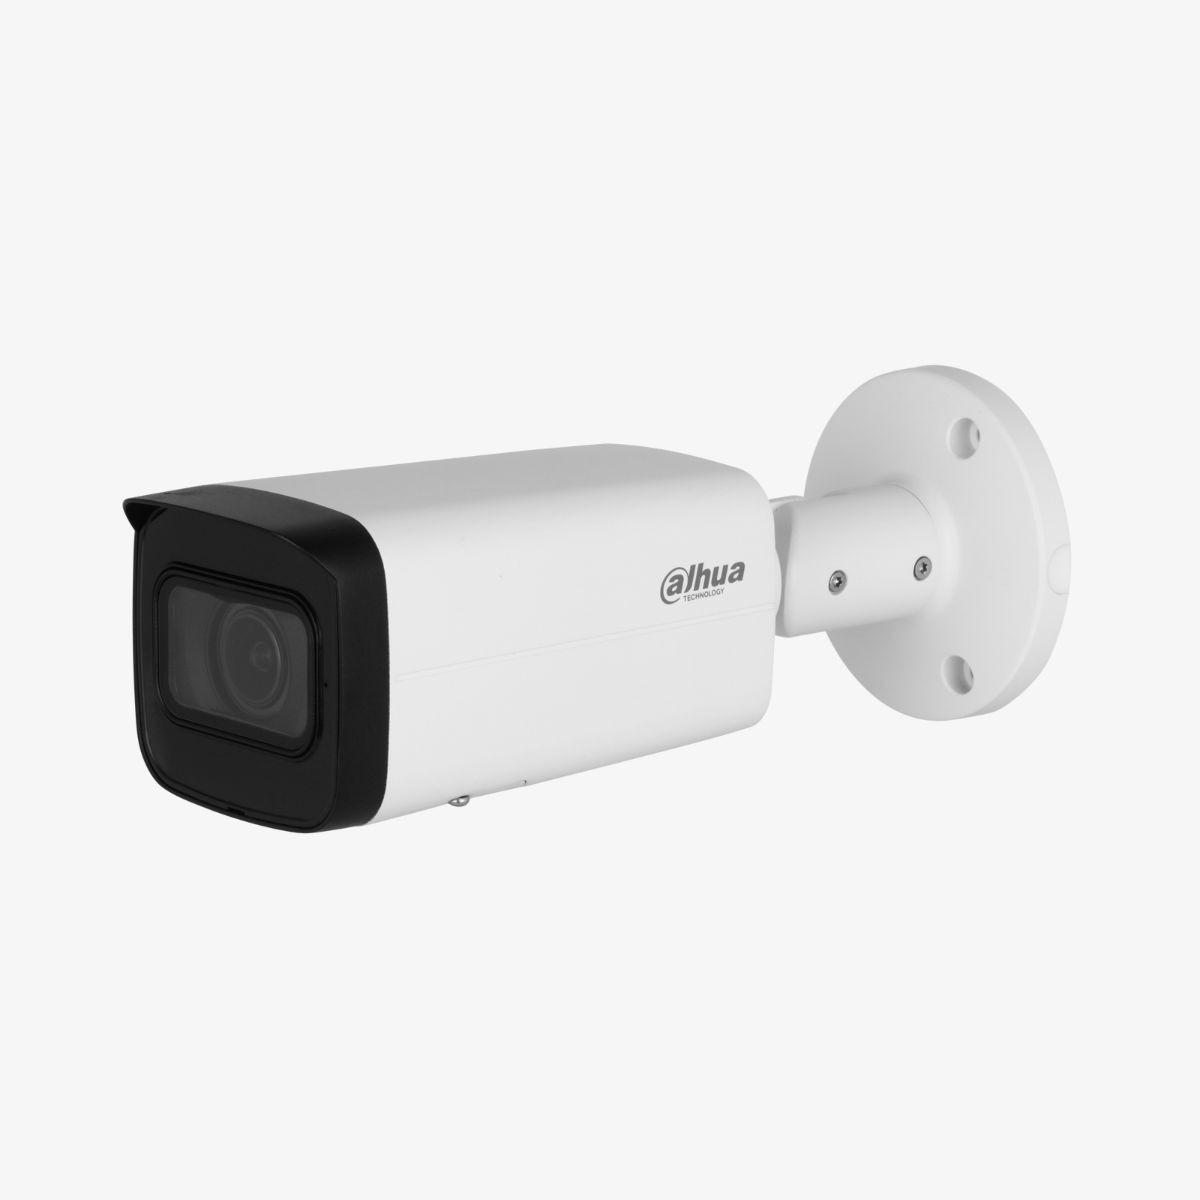 Camera IP thân hồng ngoại 4MP Dahua DH-IPC-HFW2441T-ZAS chuẩn nén H.264+/H.265+, phát hiện thông minh, IP67 